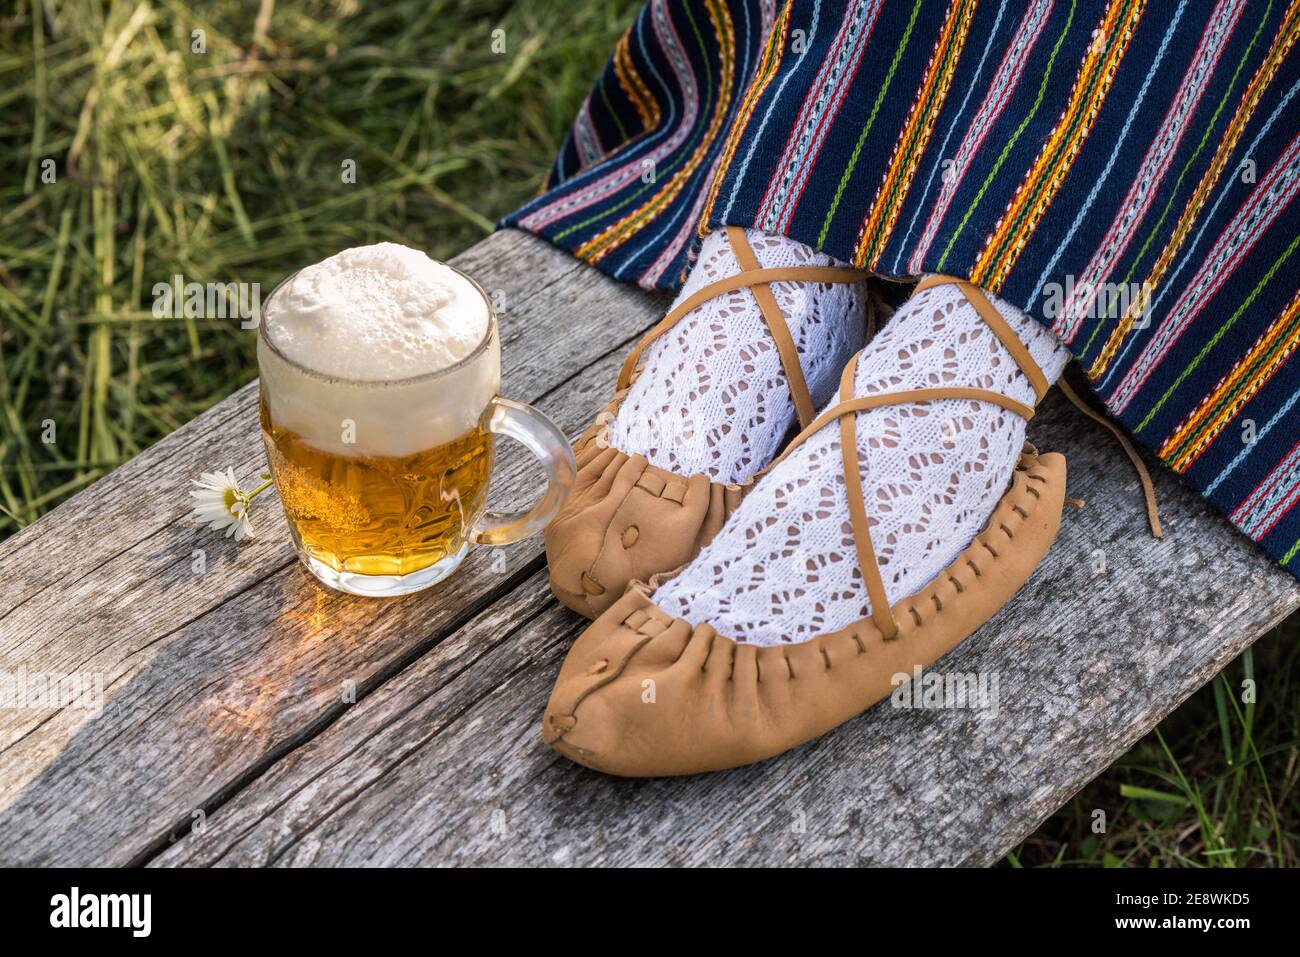 Ein Glas helles Bier und Schuhe aus Leder Stockfotografie - Alamy